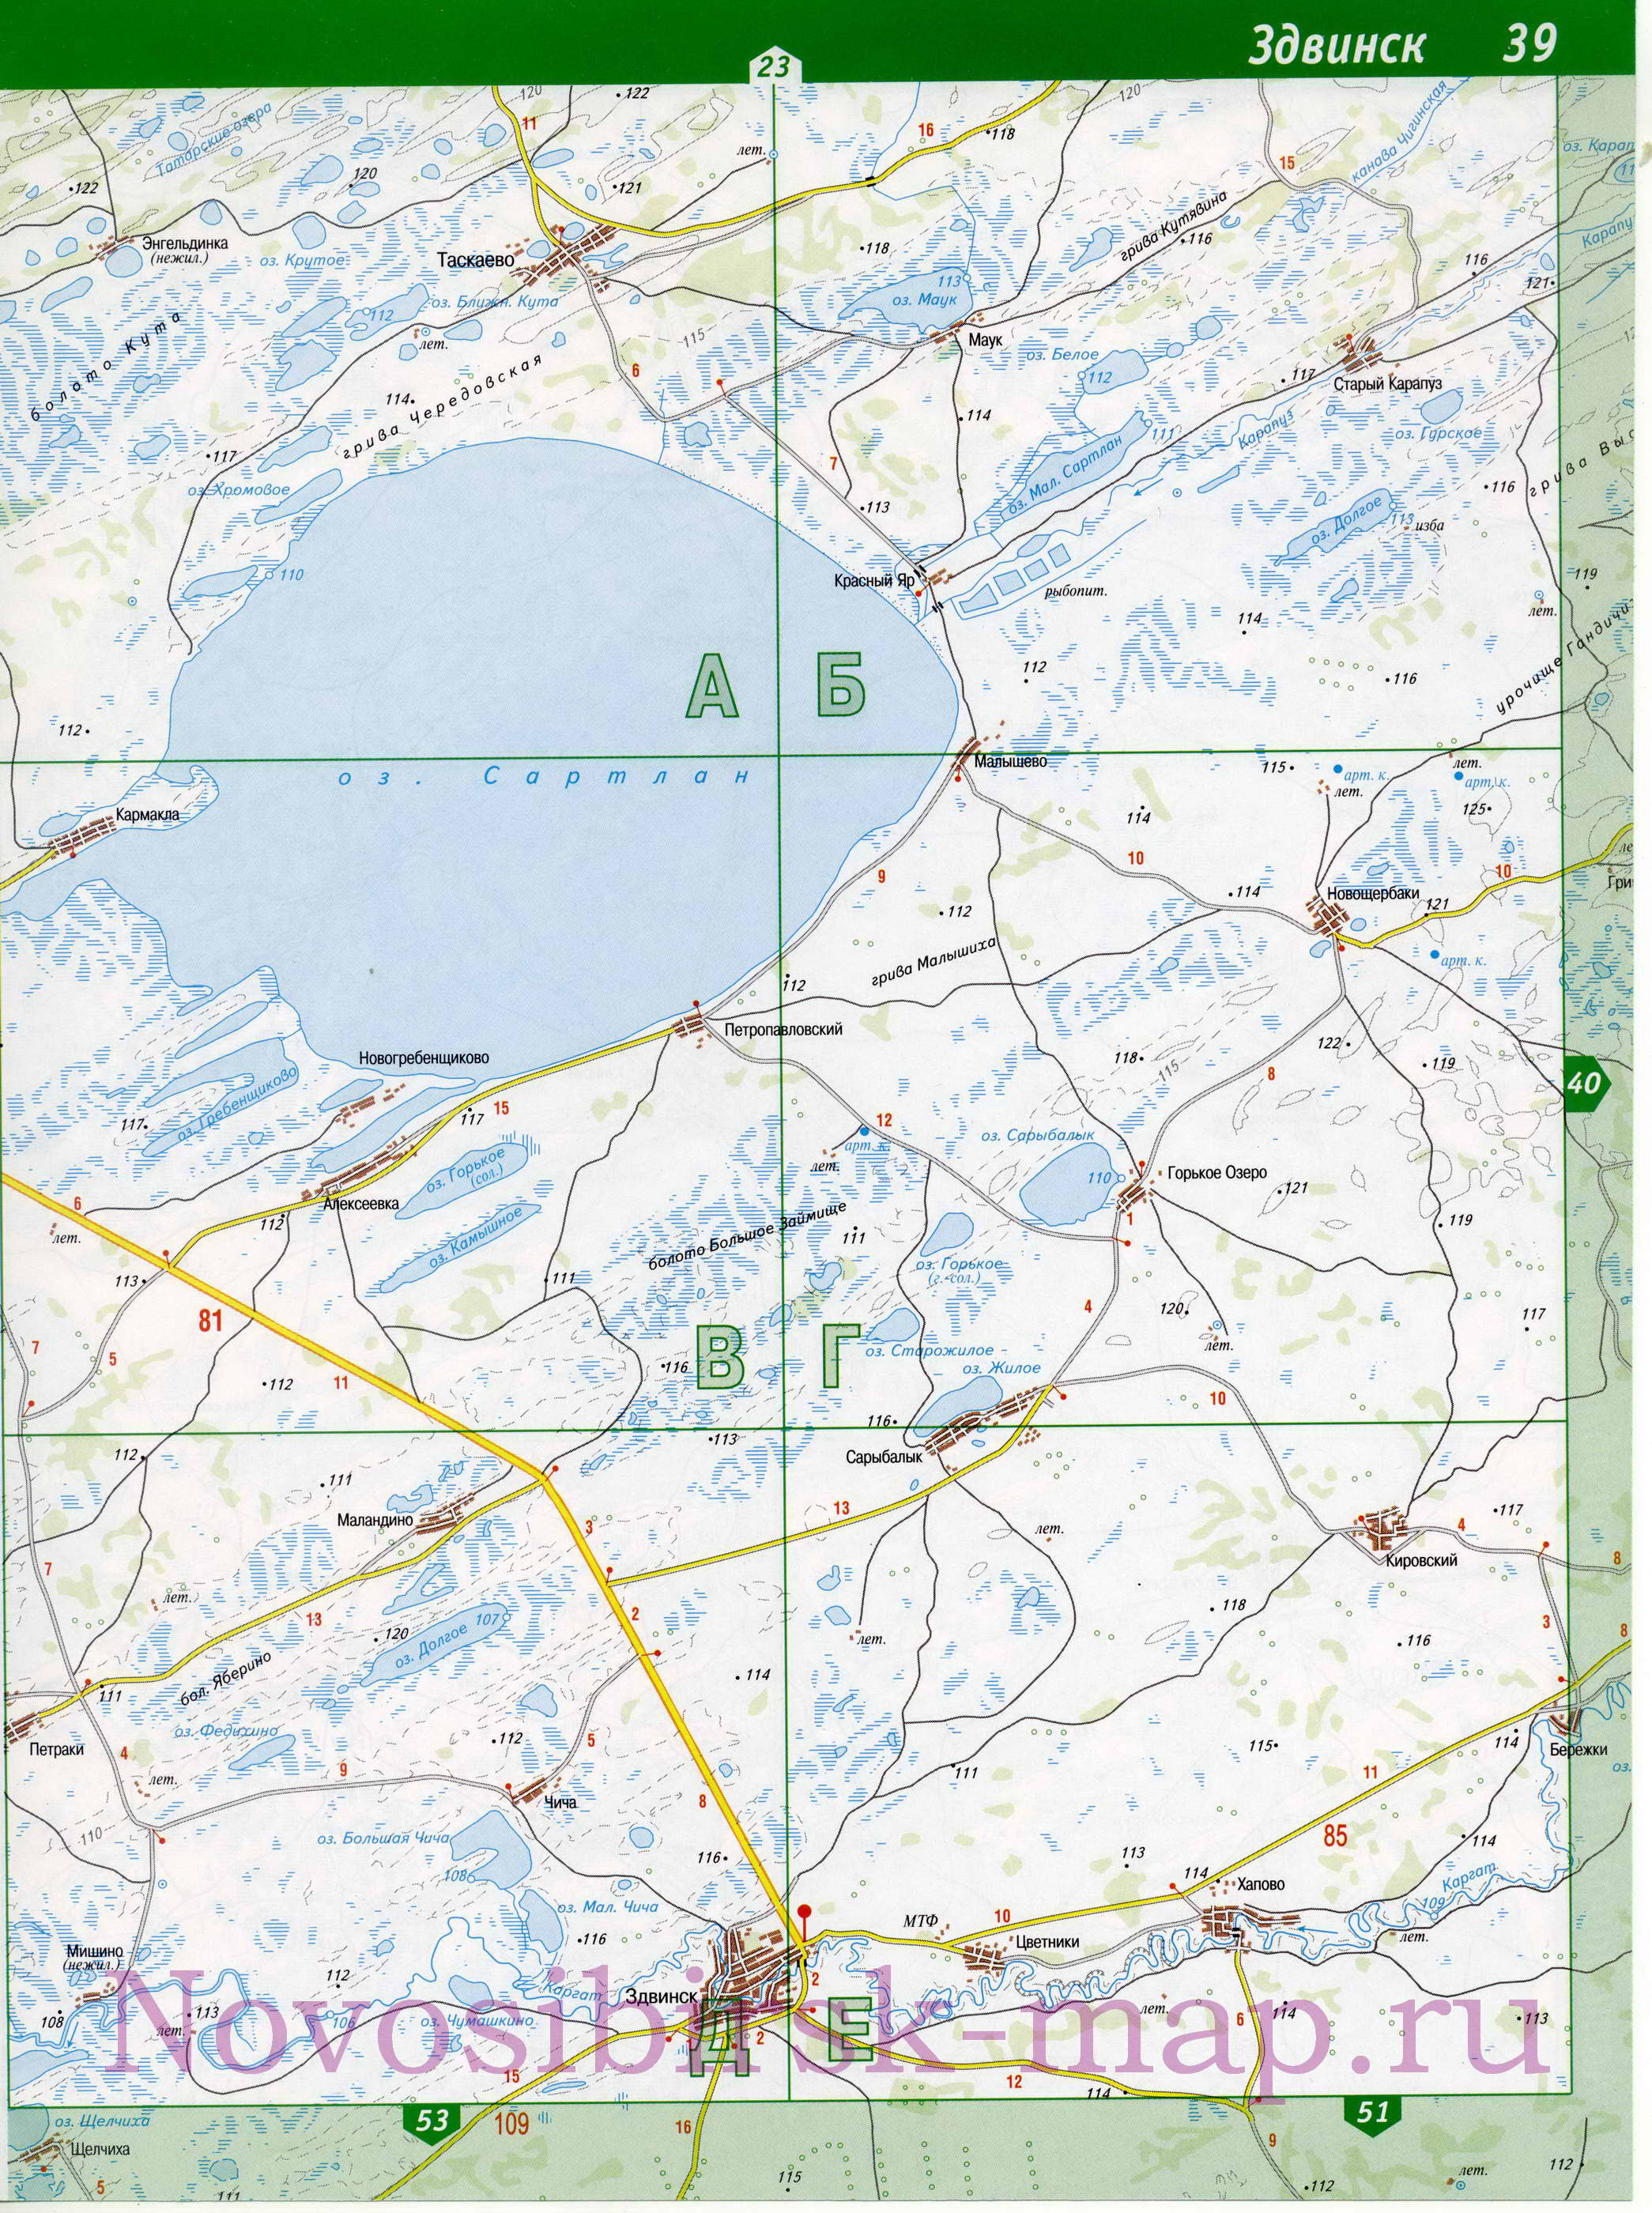 Карта Здвинского района Новосибирской области. Карта автомобильных дорог - Здвинский район, B0 - 